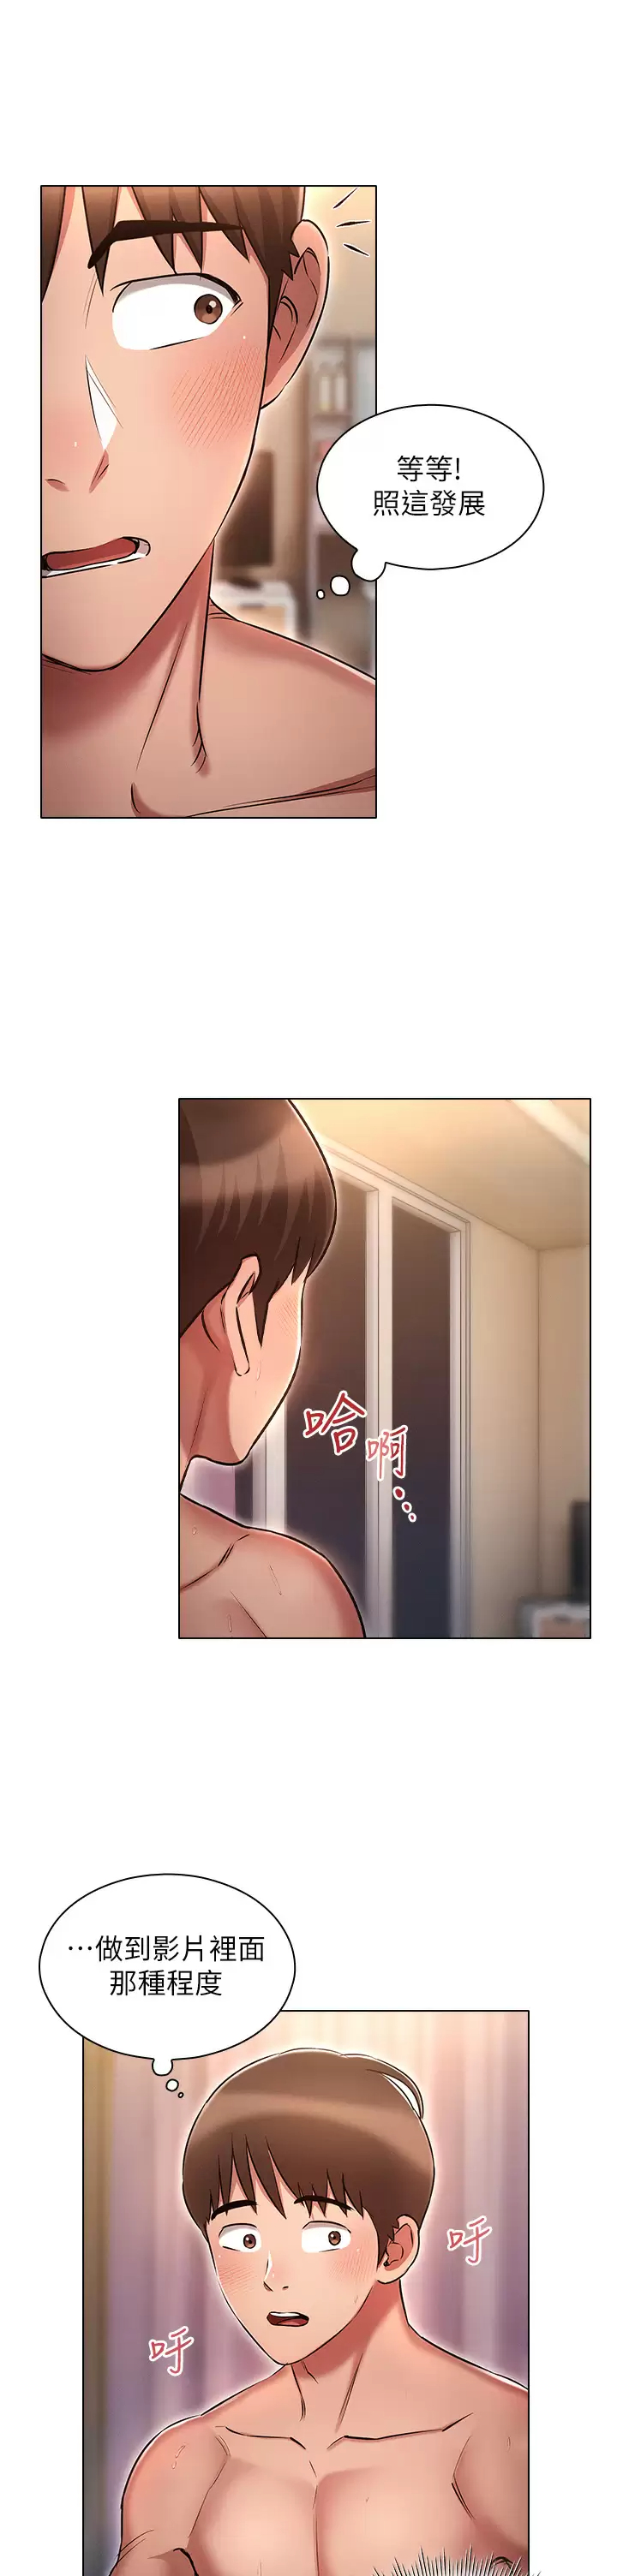 韩国污漫画 魯蛇的多重宇宙 第14话 挑战窗边暴露性爱! 25